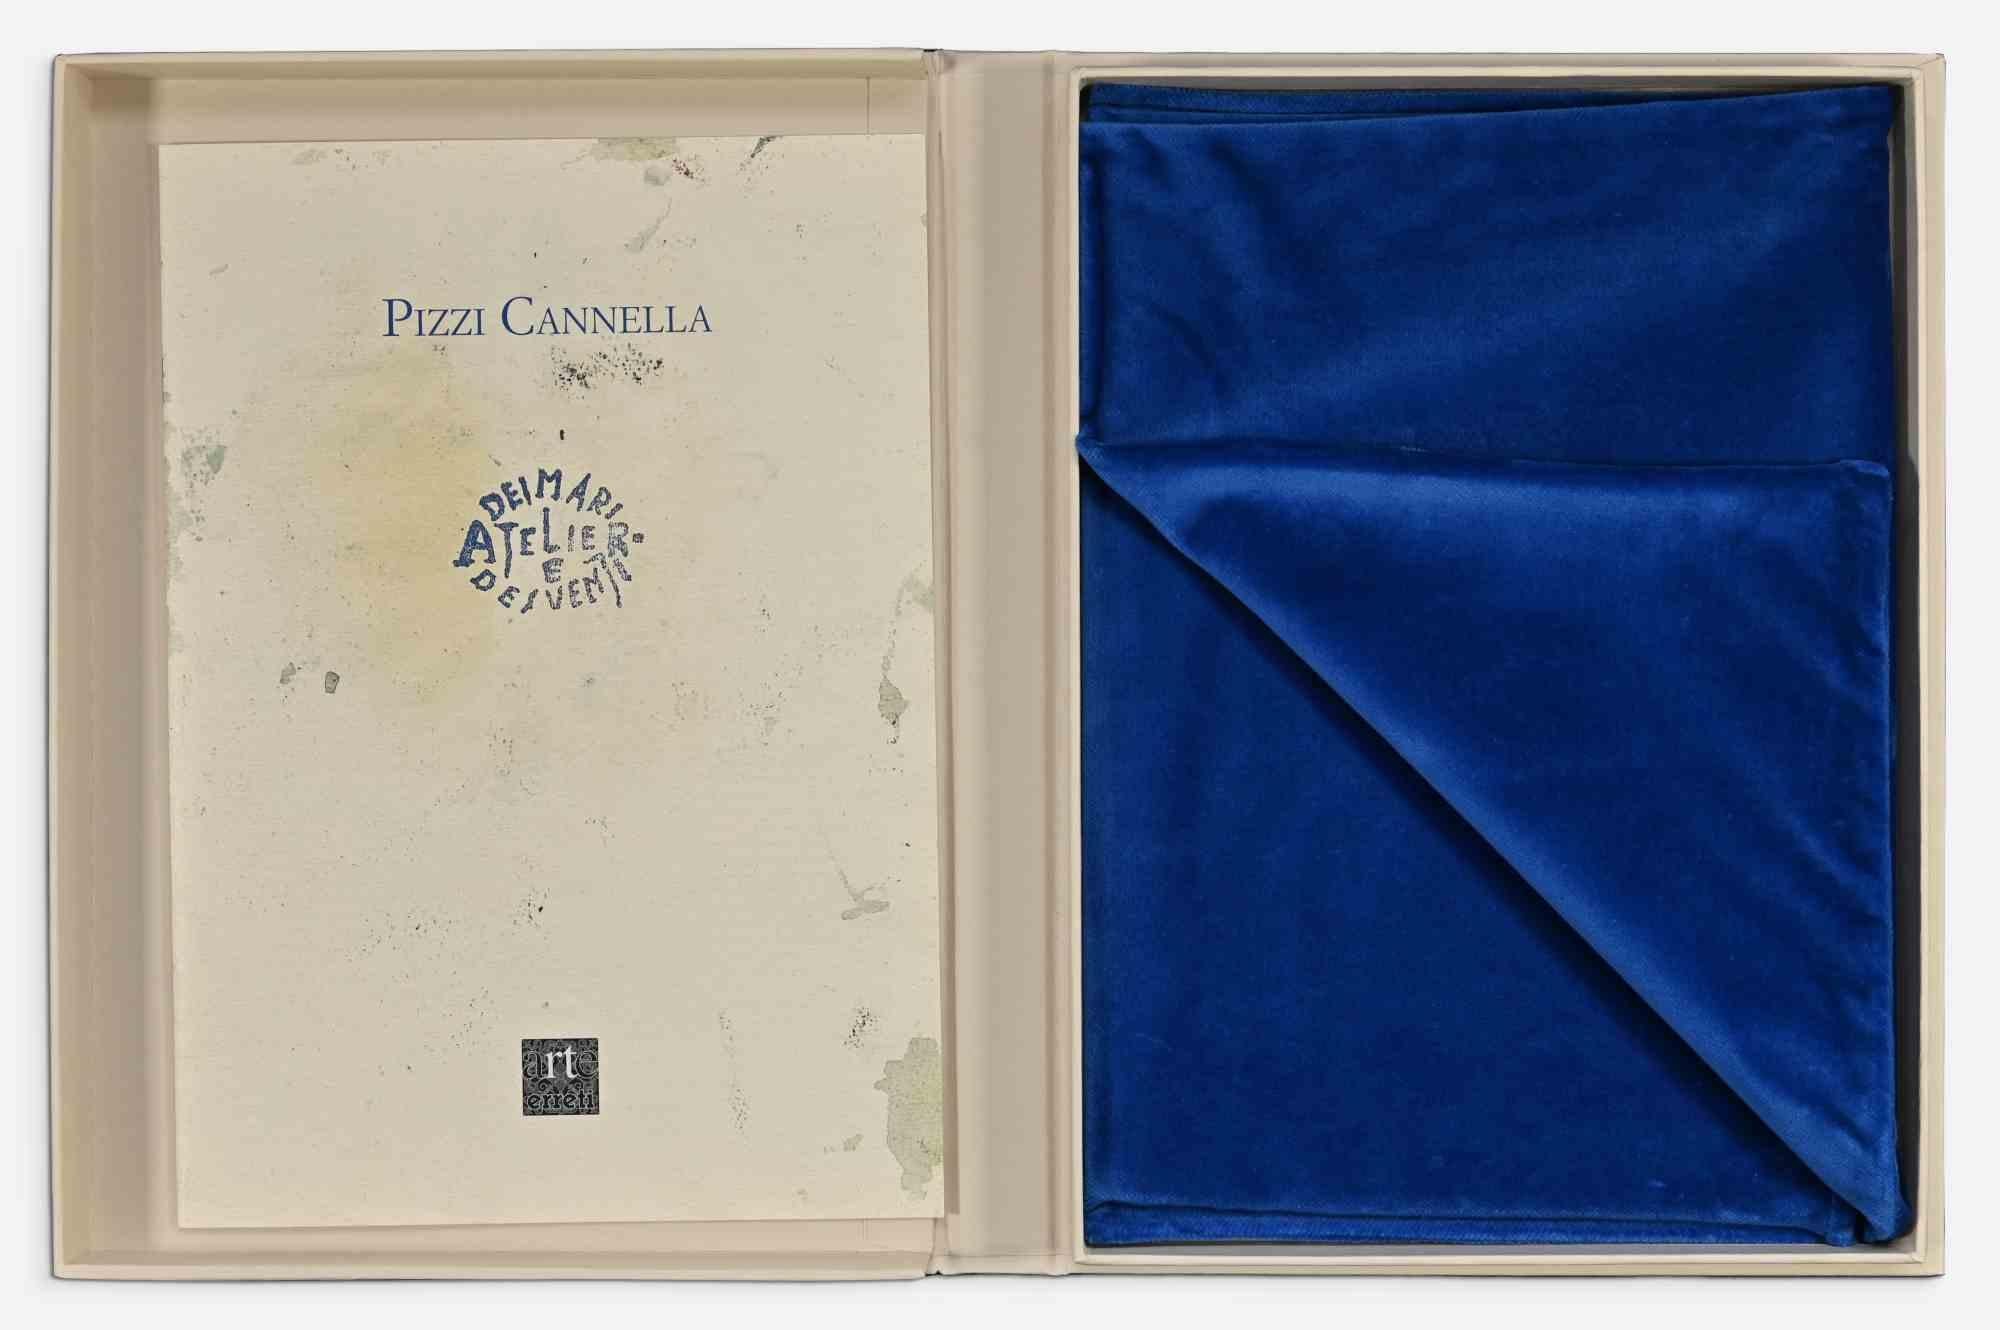 Atelier dei Mari e dei Venti - Lithograph by Piero Pizzi Cannella - 2000 For Sale 4